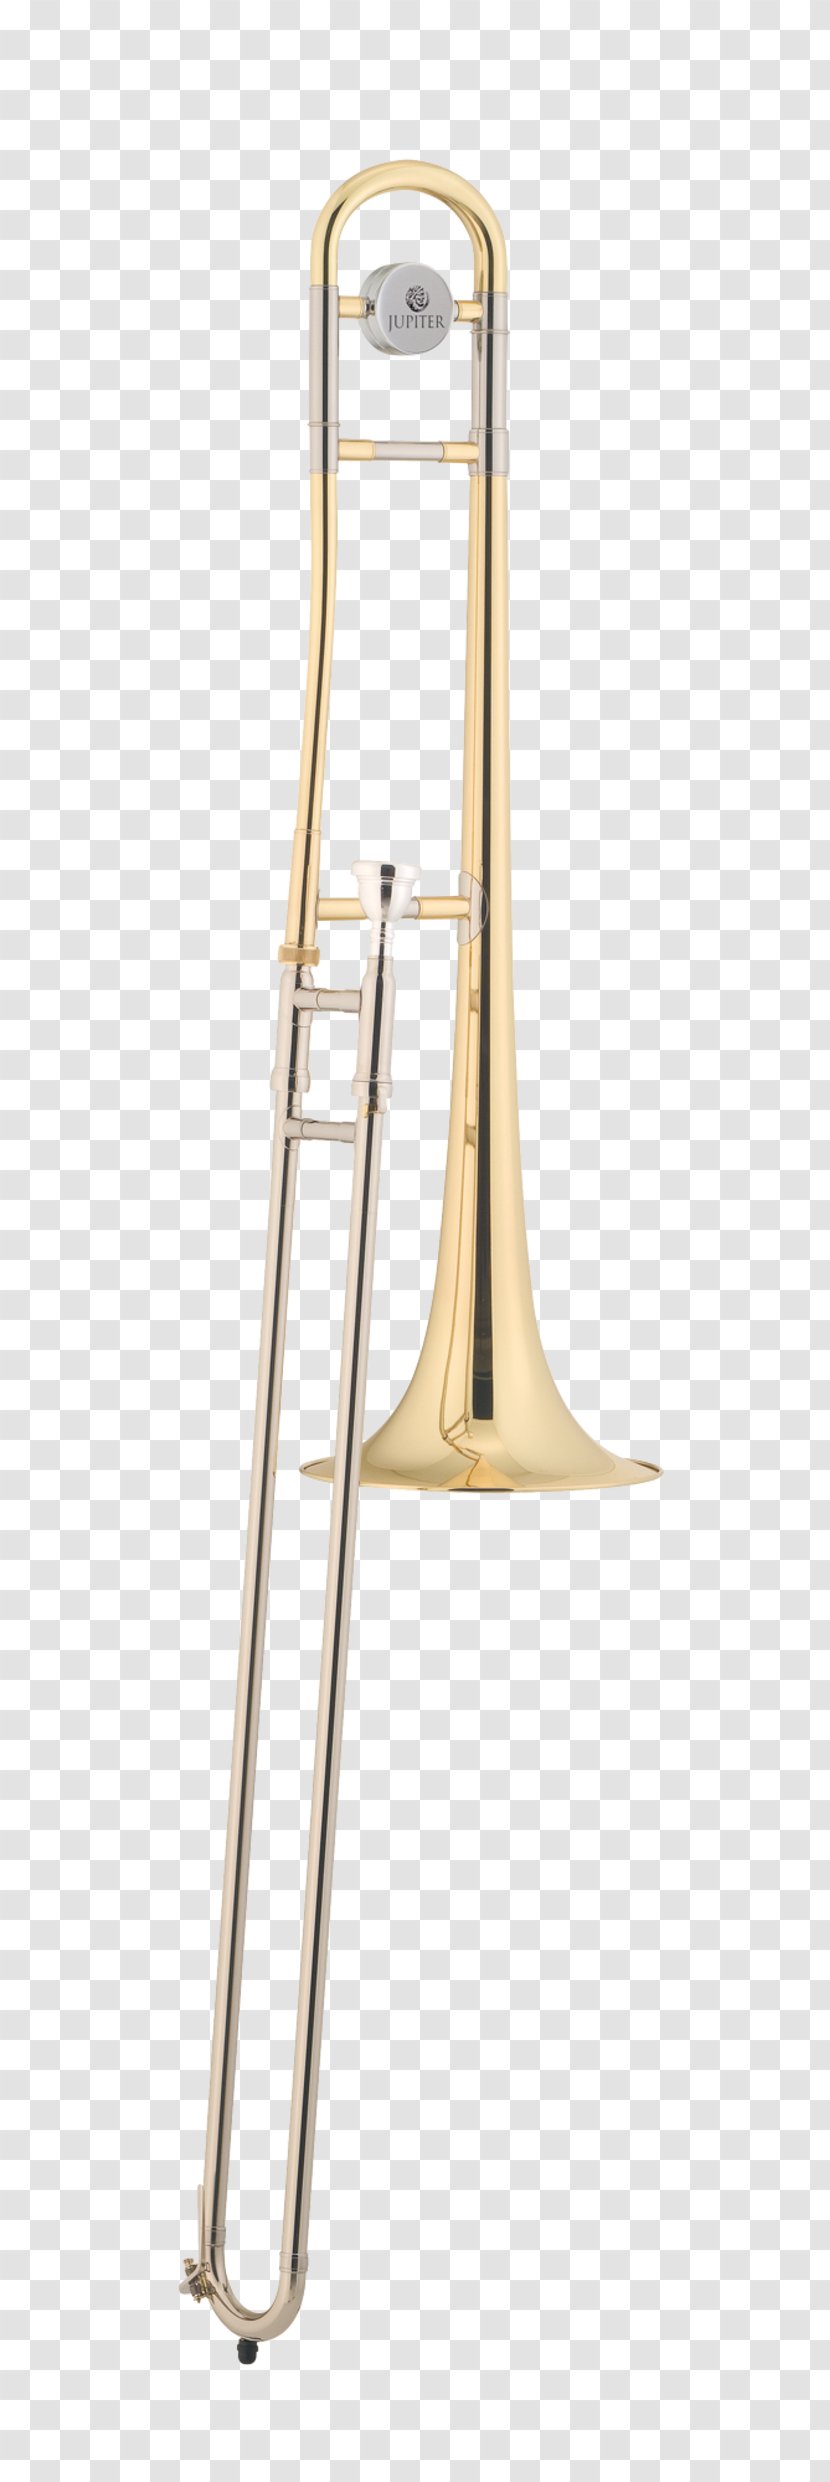 Musimiet Brass Instruments Musical Mellophone Flugelhorn - Instrument - Trombone Transparent PNG